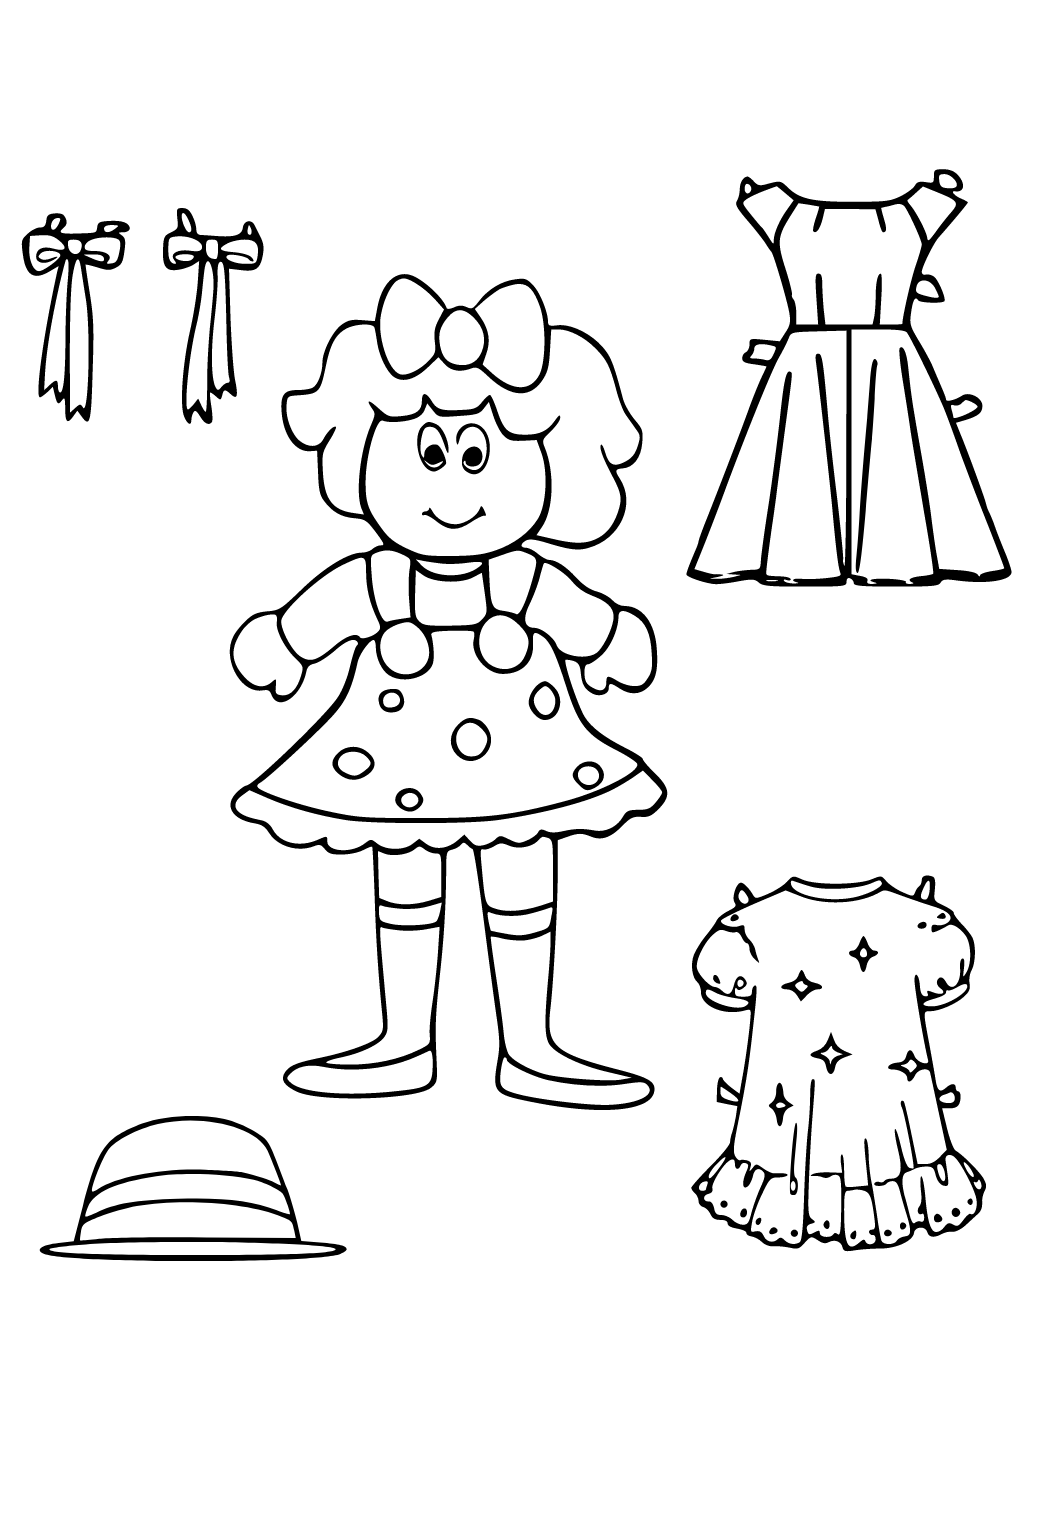 Desenho e Imagem Round 6 Boneca para Colorir e Imprimir Grátis para Adultos  e Crianças (Meninas e Meninos) 